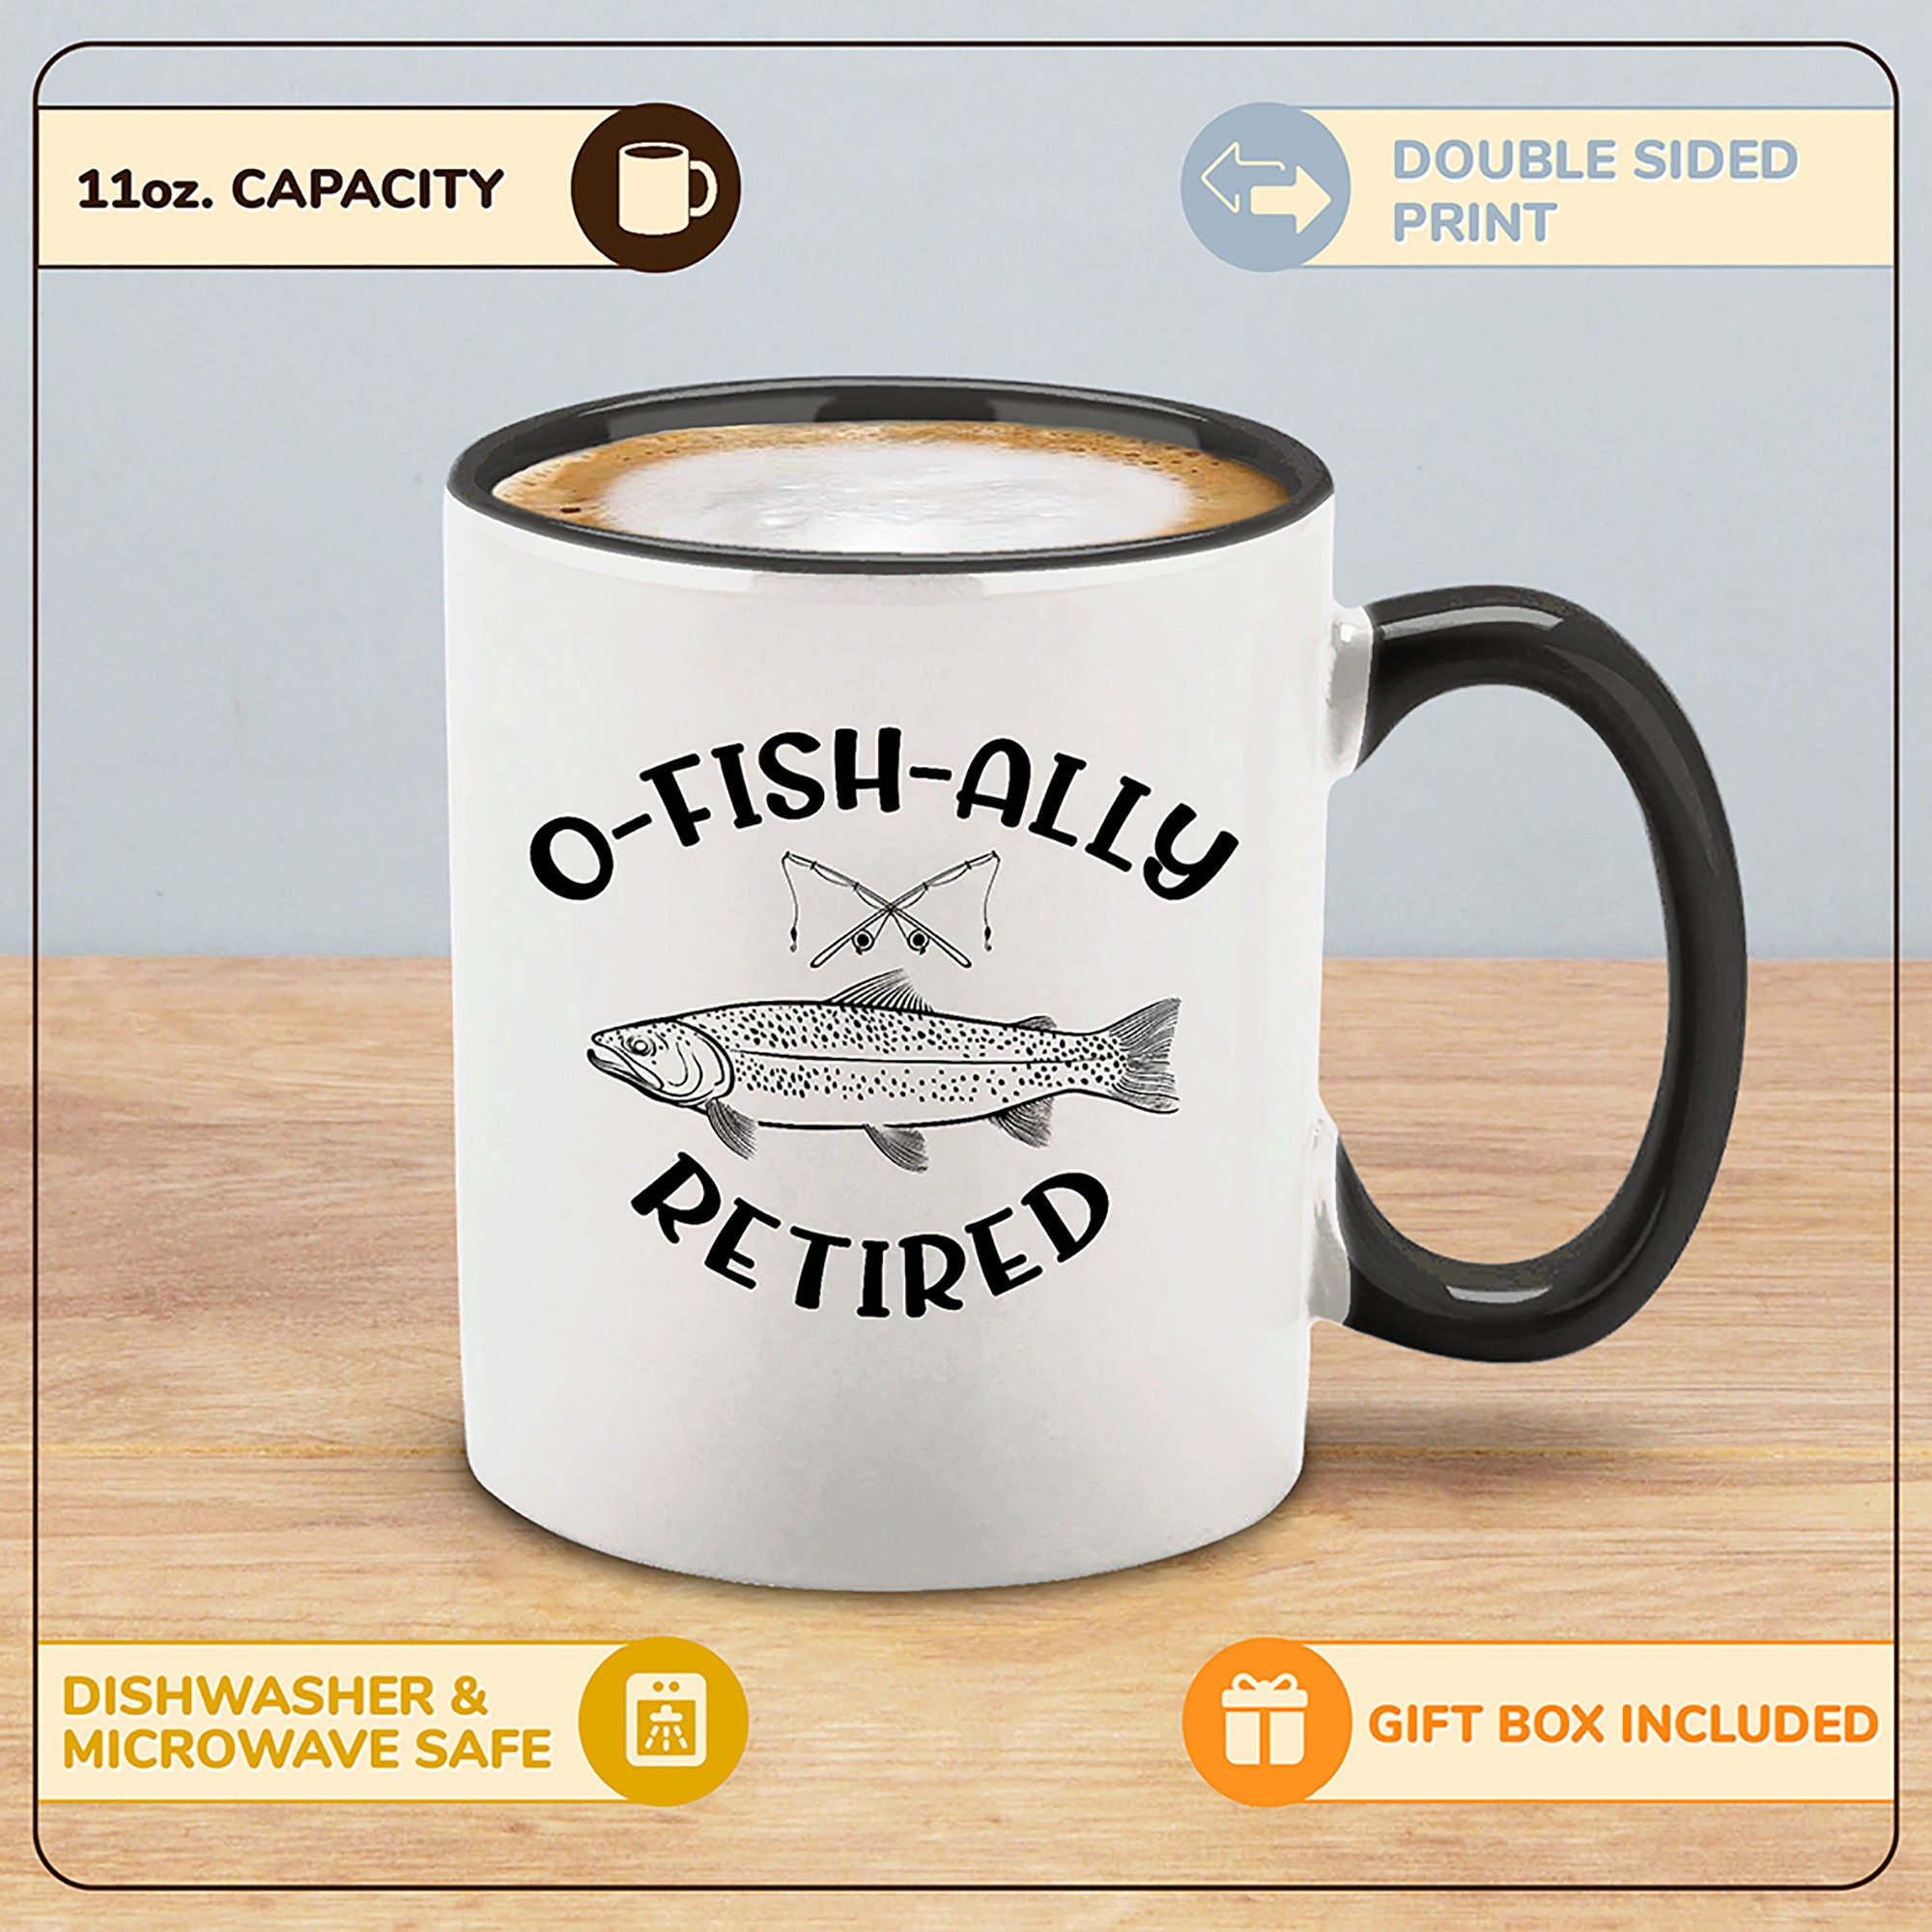 OH-Fish-Ally Retired, Funny Retirement Gift Men' Full Color Mug